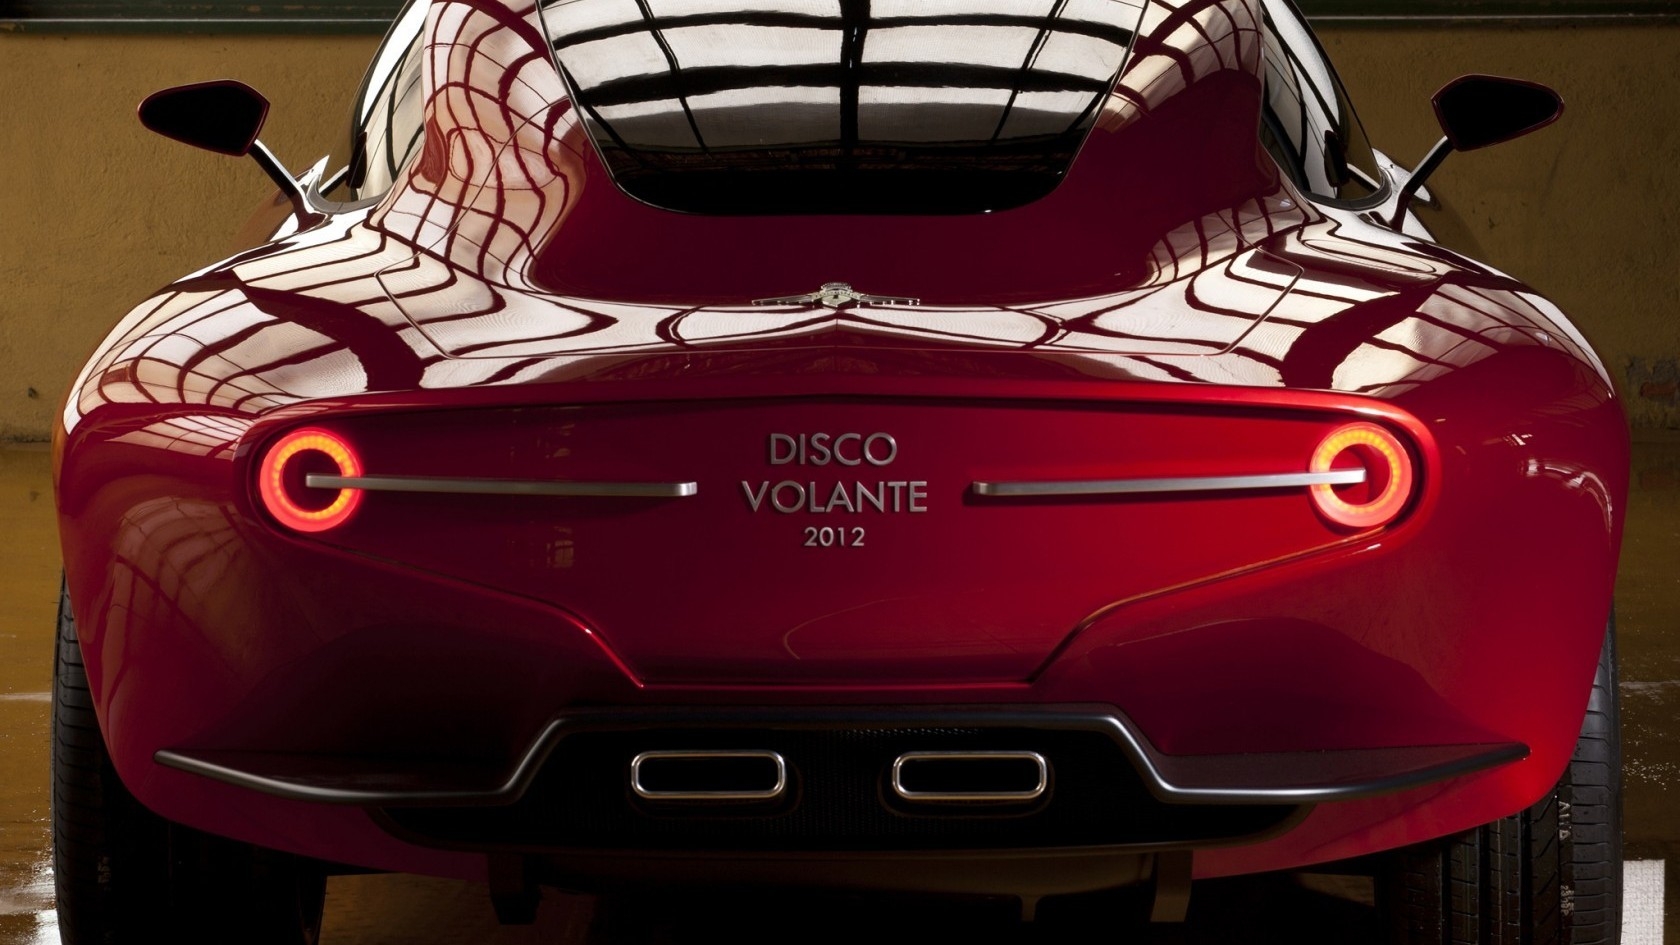 Alfa Romeo Disco Volante 2012 for 1680 x 945 HDTV resolution